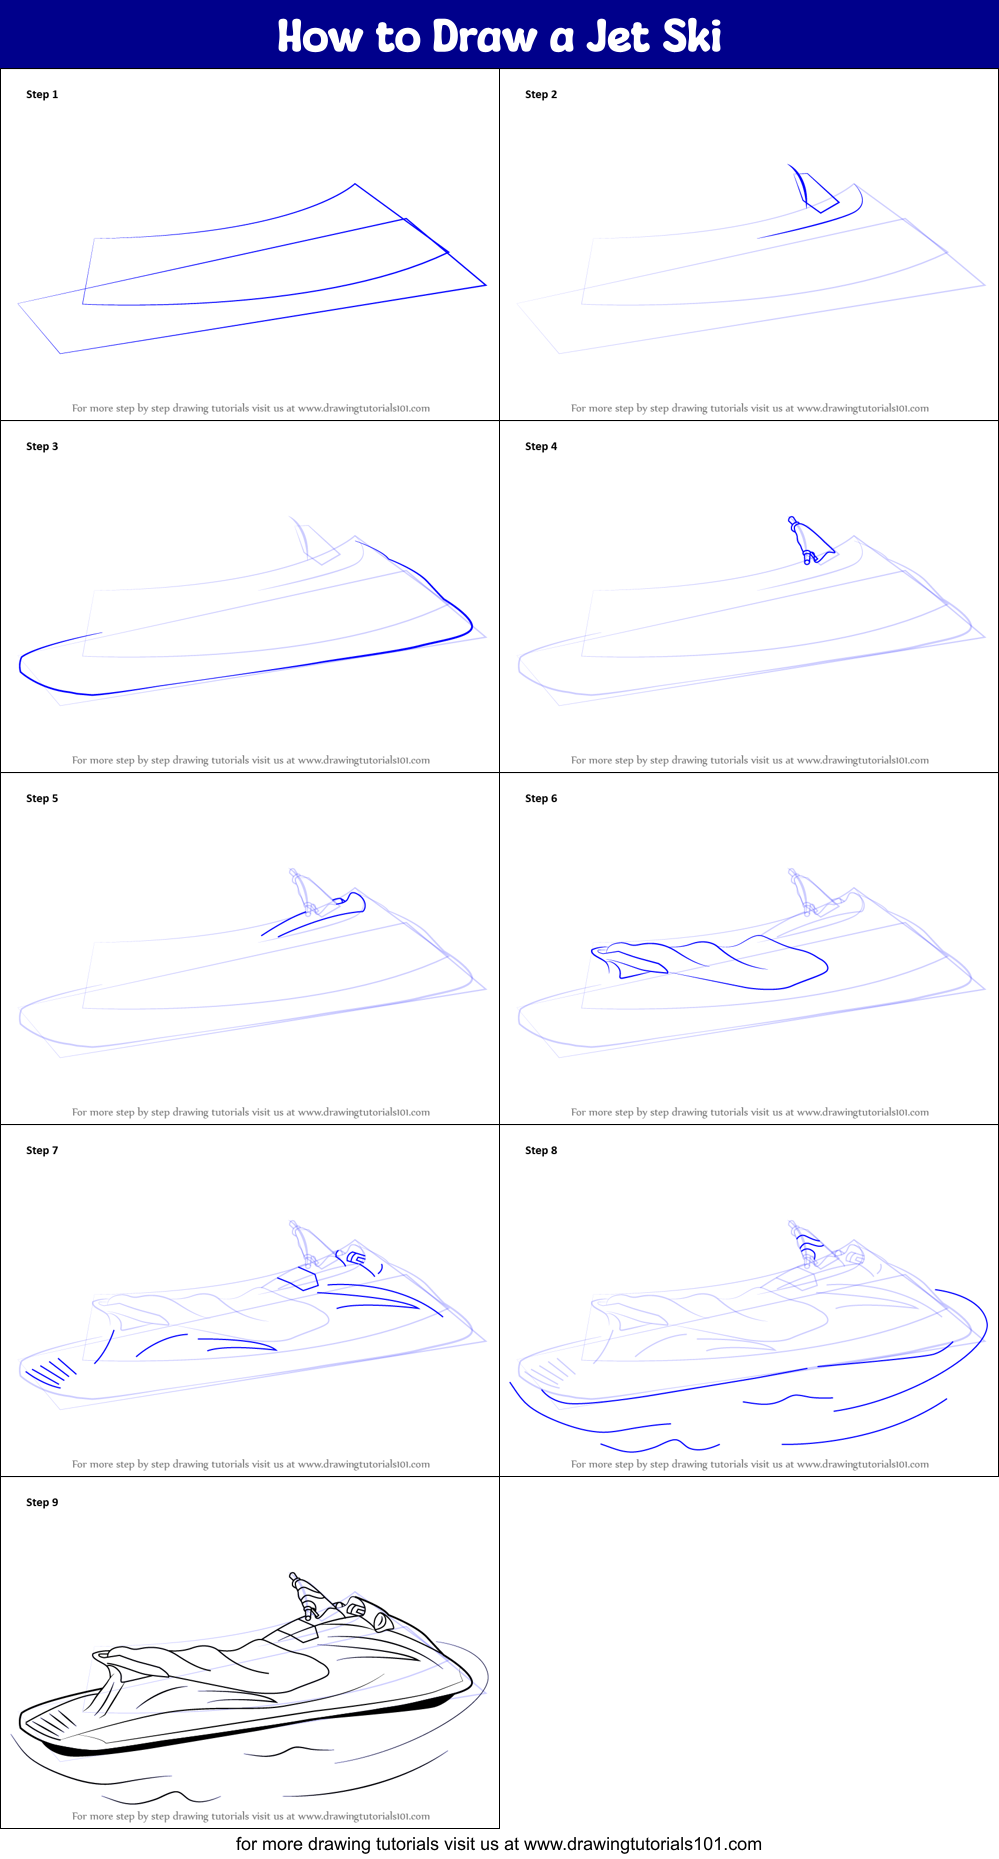 Jet ski sketch 3d illustra by Kirill Cherezov  Mostphotos